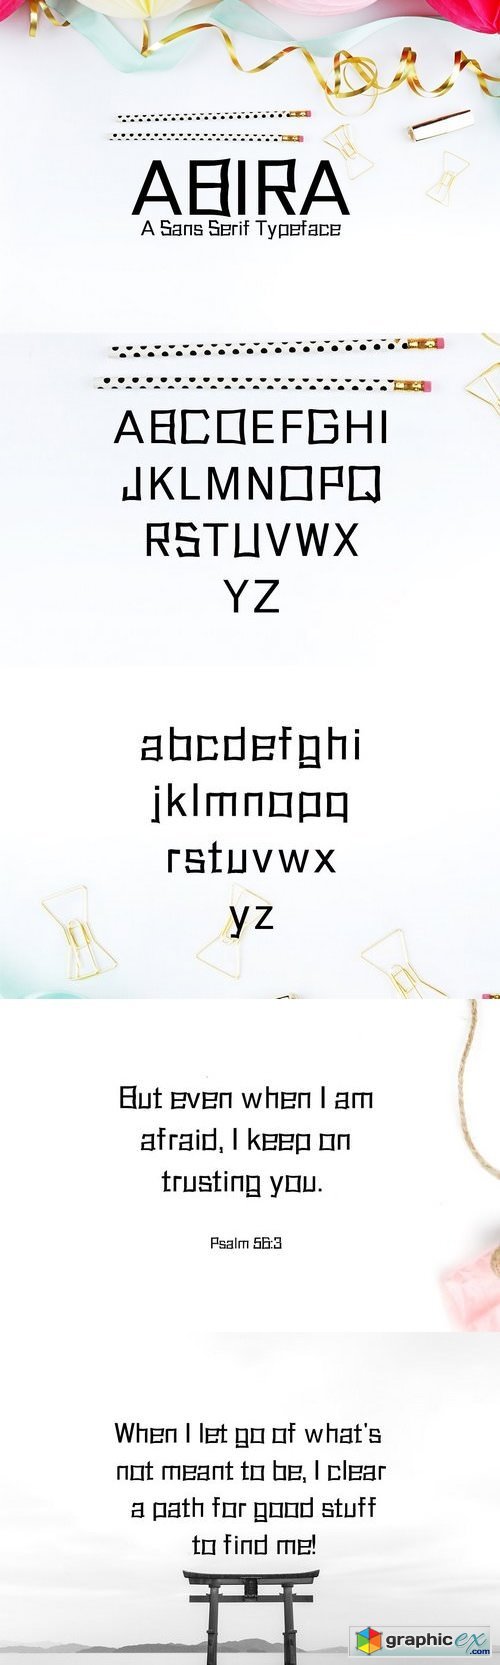 Abira Sans Serif 6 Font Family Pack